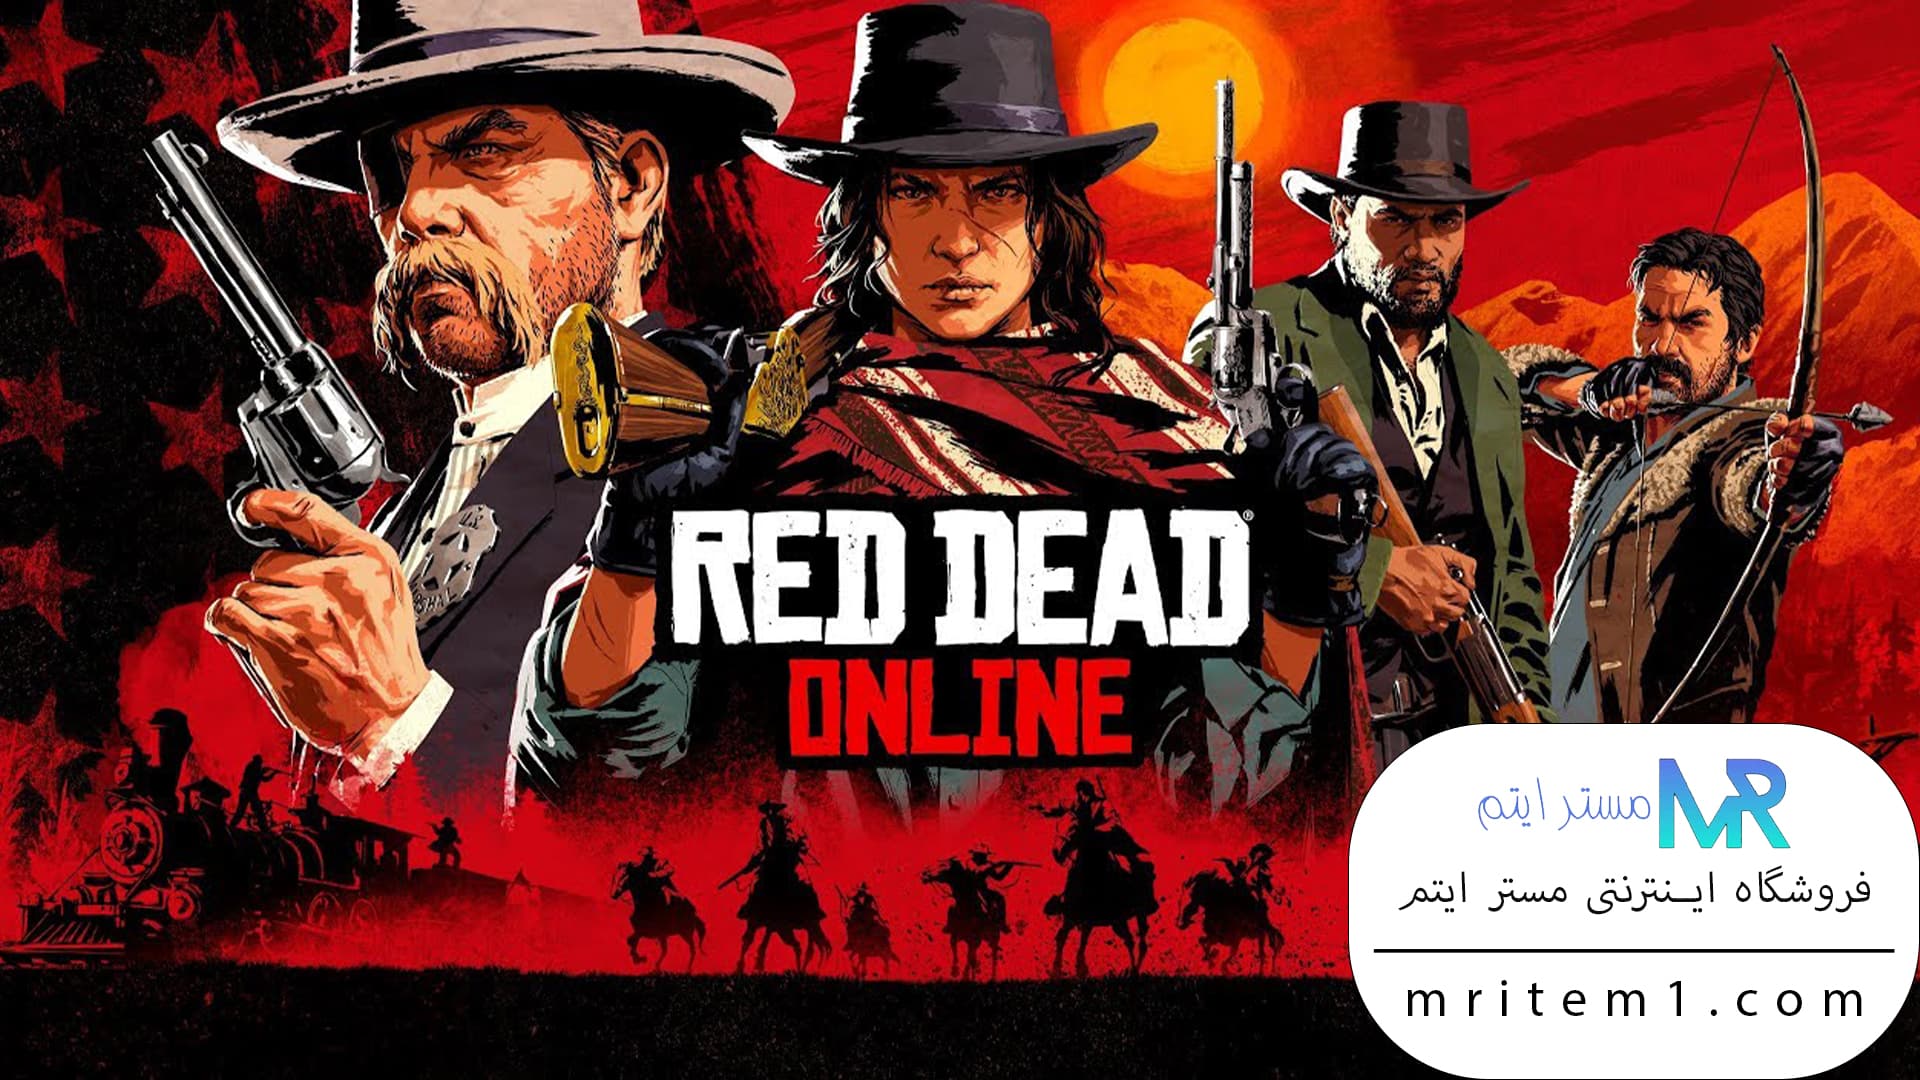 خرید بازی رد دد انلاین برای ایکس باکس - بازی Red Dead Online برای Xbox